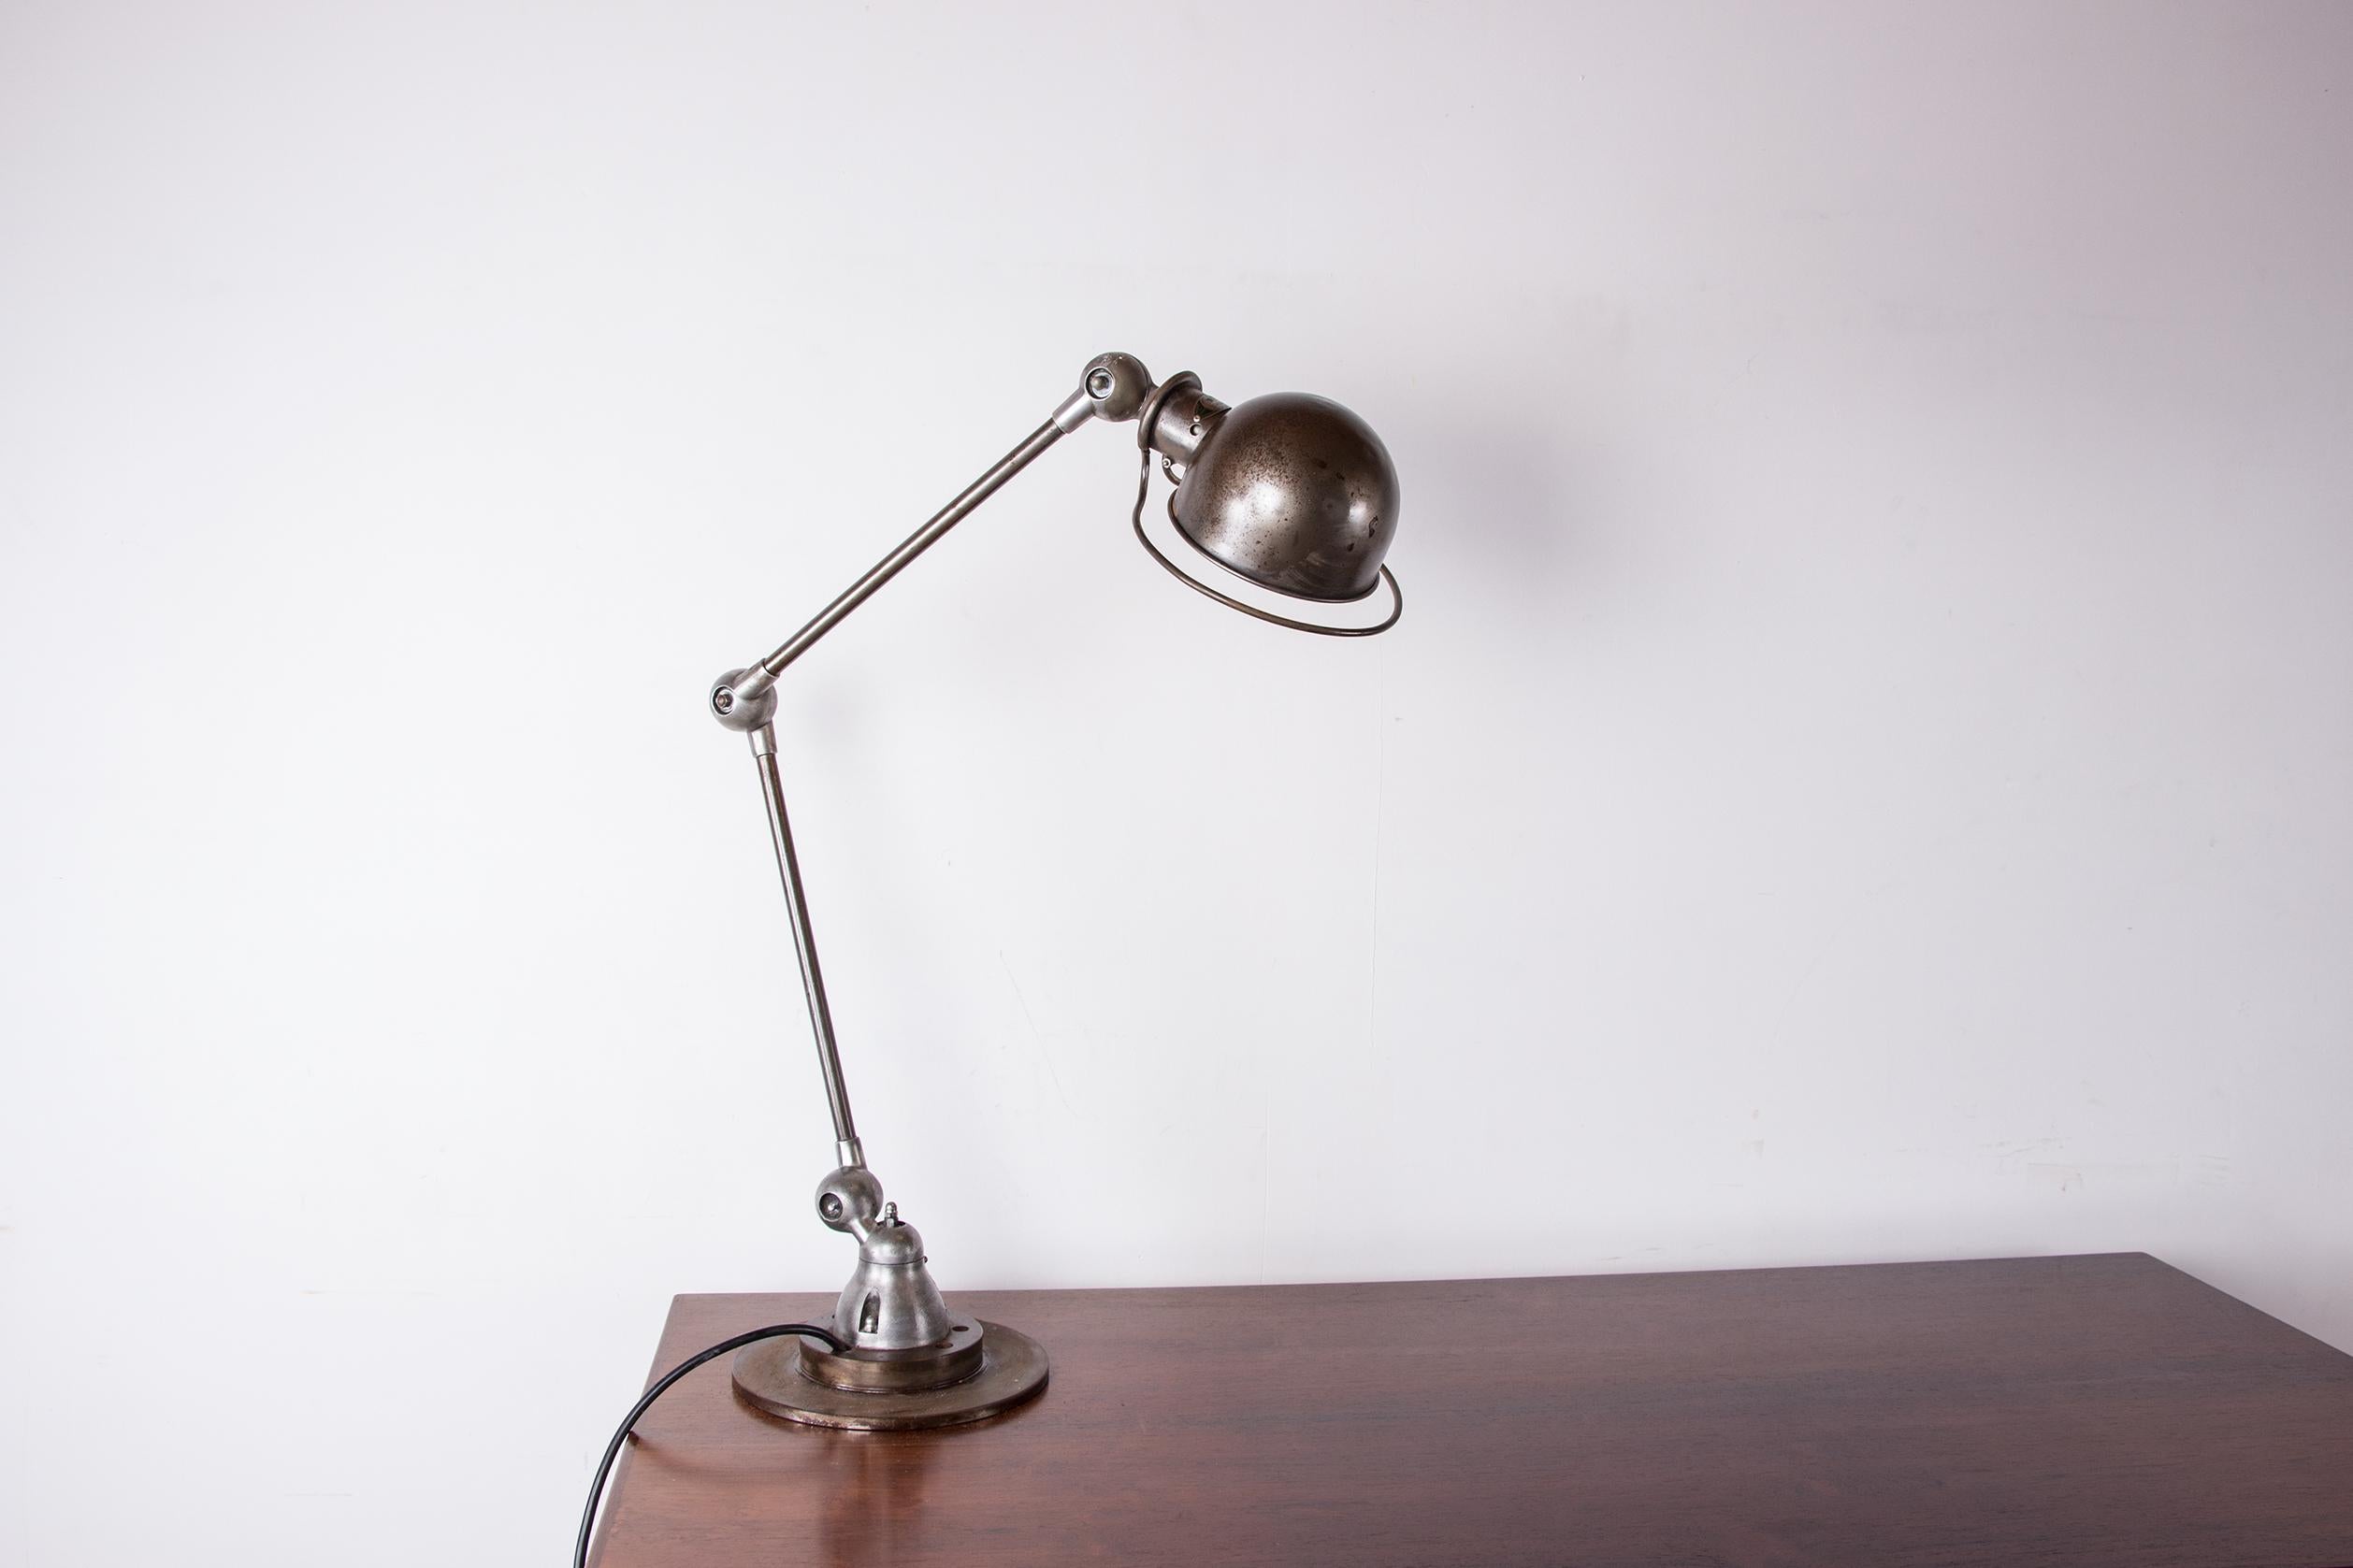 Hervorragende alte Schreibtischlampe. 
Diese ikonische Lampe im industriellen Stil hat eine sehr schöne Patina und eine perfekte Beleuchtung. 
Der Schalter befindet sich an der Lampe selbst. Der Lampenschirm und die Arme können dank eines kabellosen